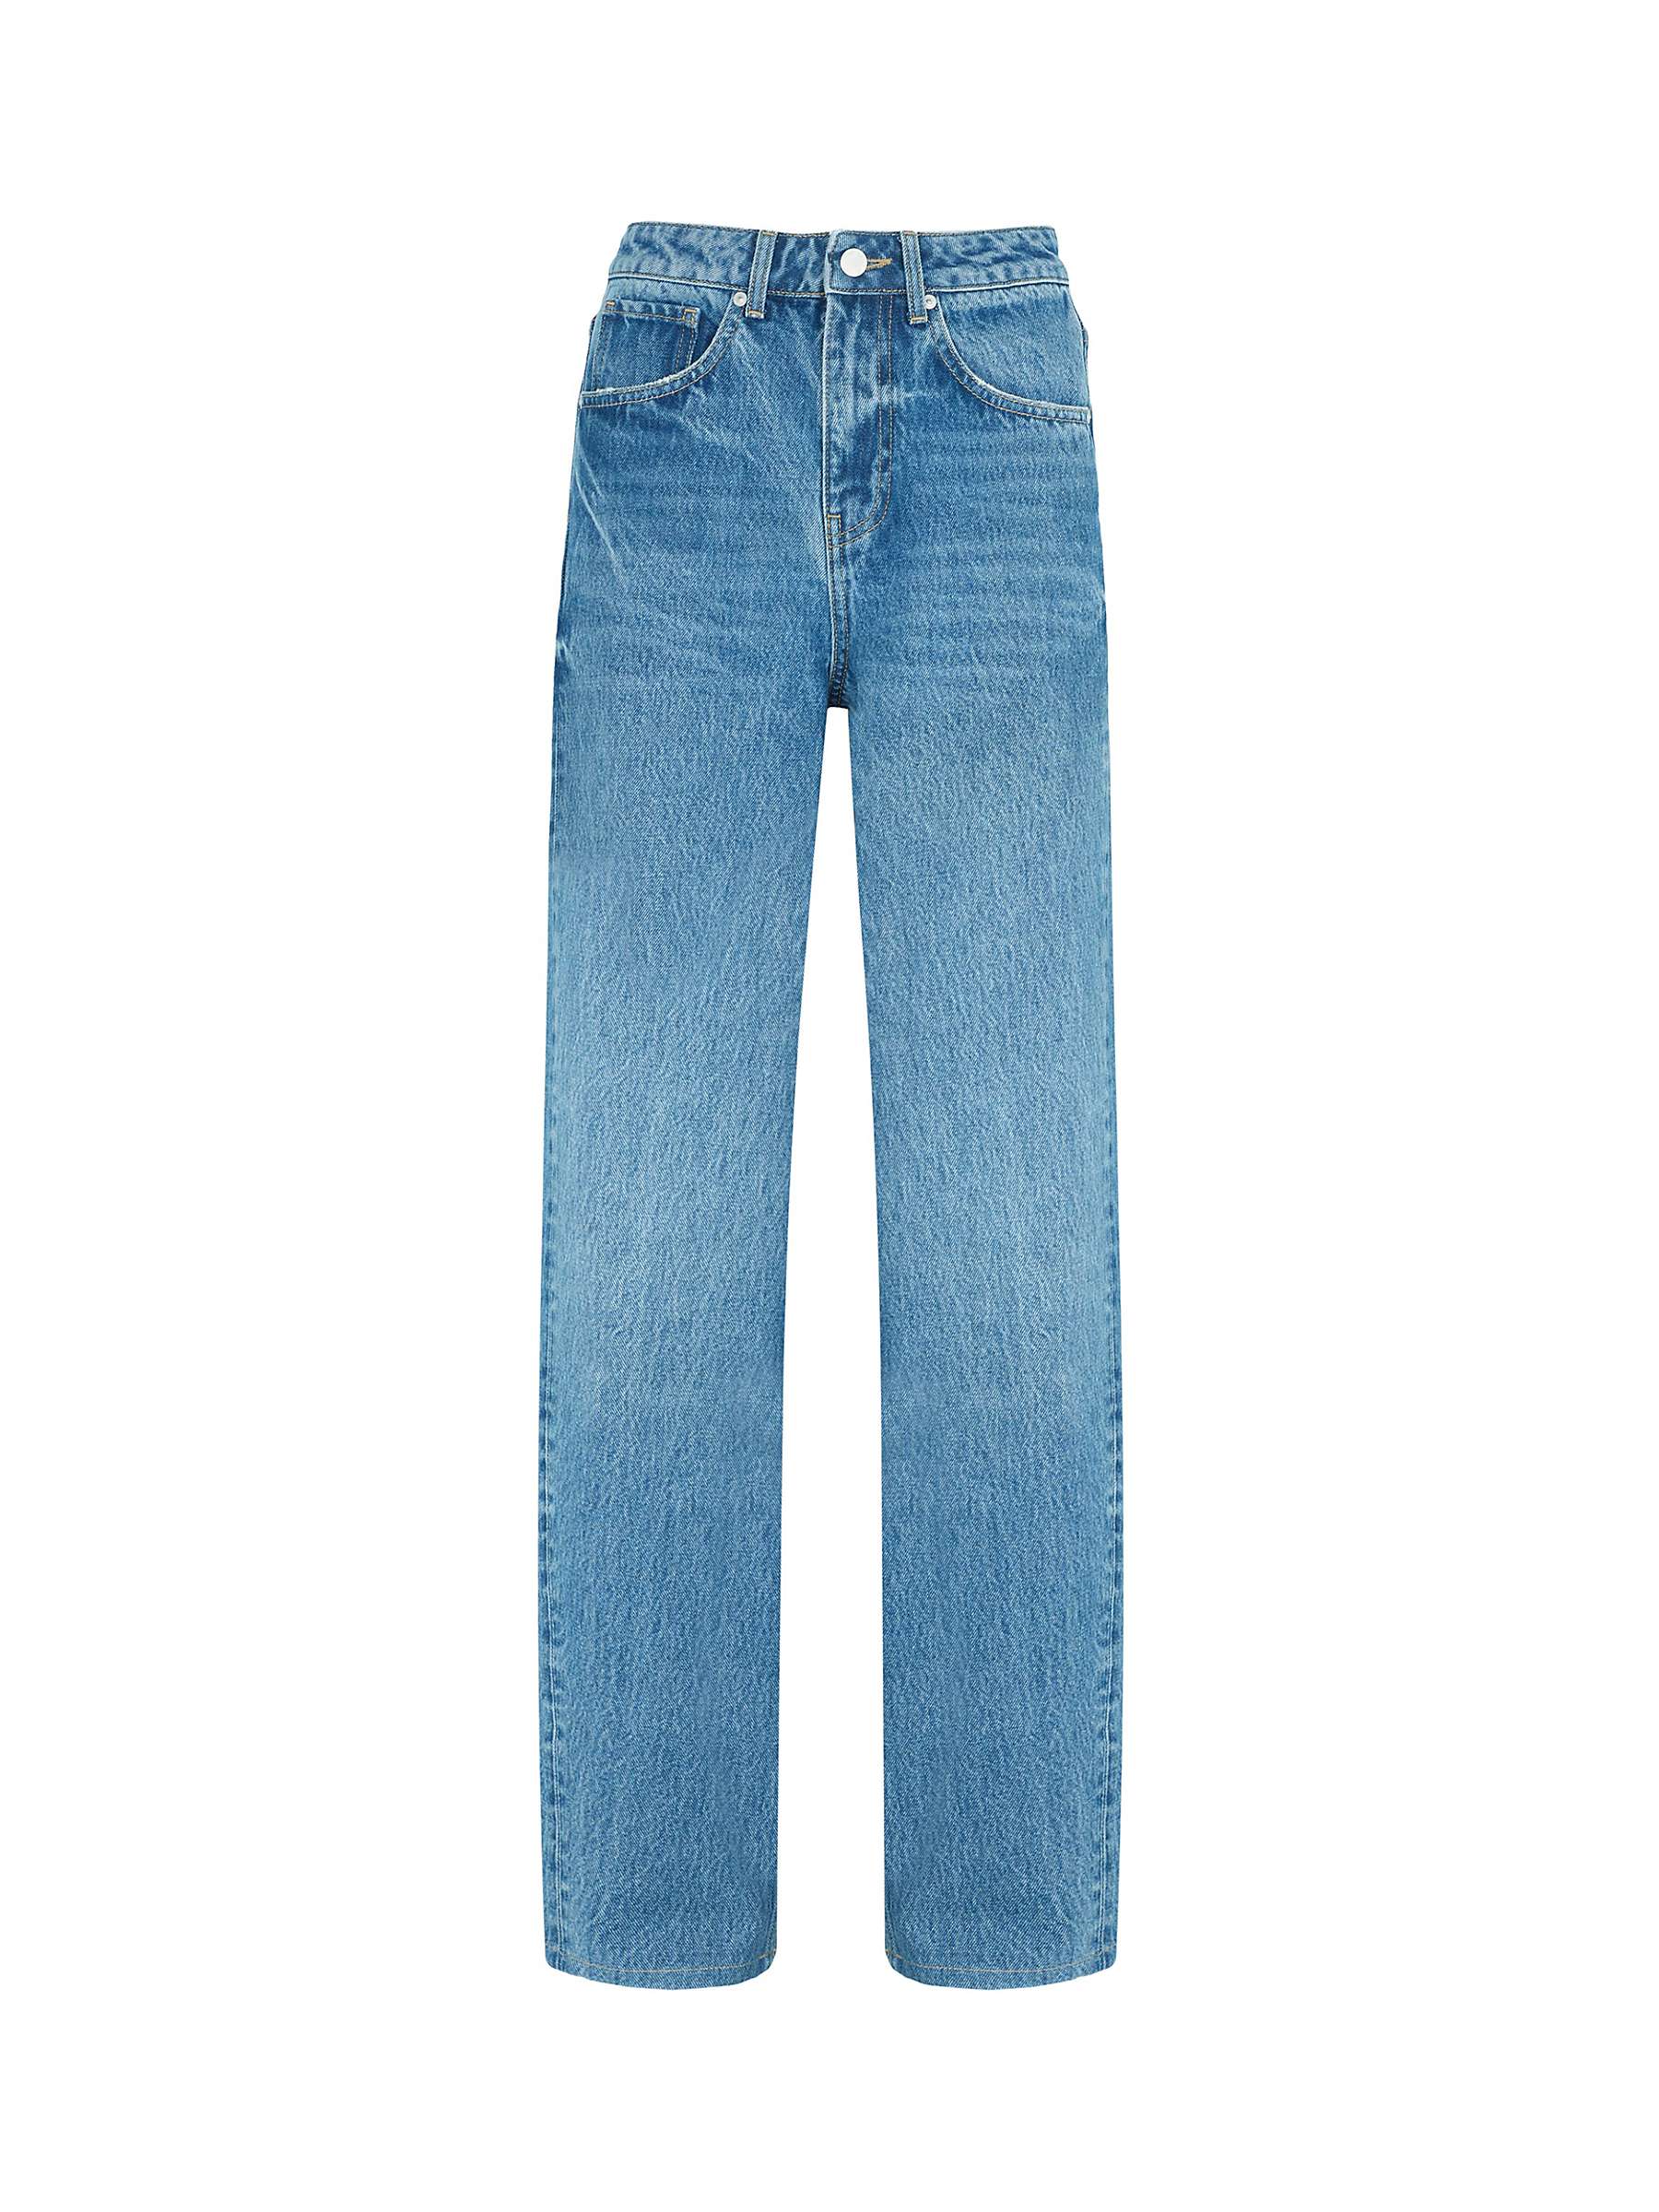 Buy Mint Velvet High Rise Wide Leg Jeans, Indigo Online at johnlewis.com